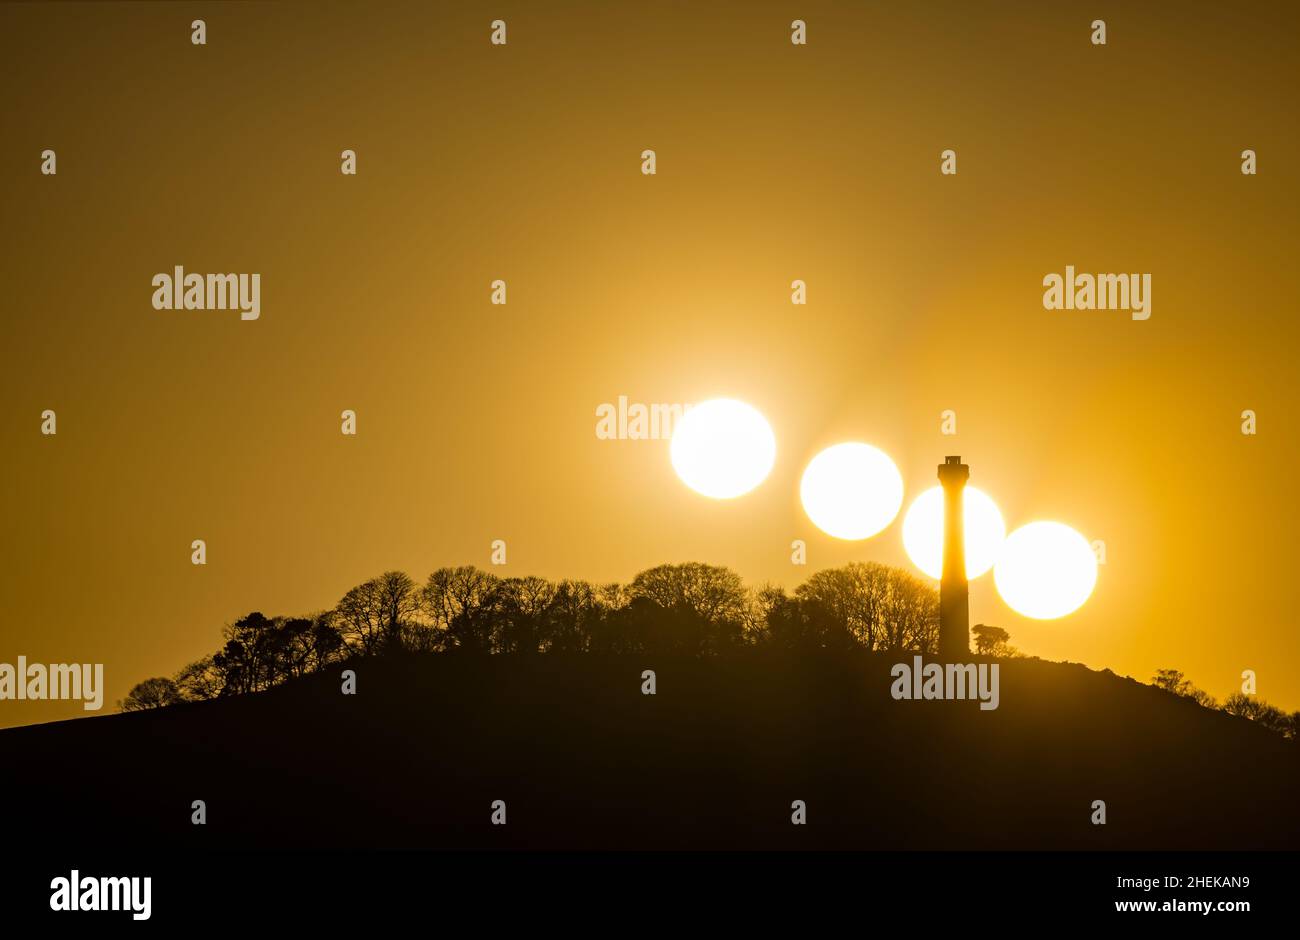 Compuesto de puesta de sol en el cielo naranja detrás de la silueta de la torre de la cima del Monumento Hopetoun, East Lothian, Escocia, Reino Unido Foto de stock